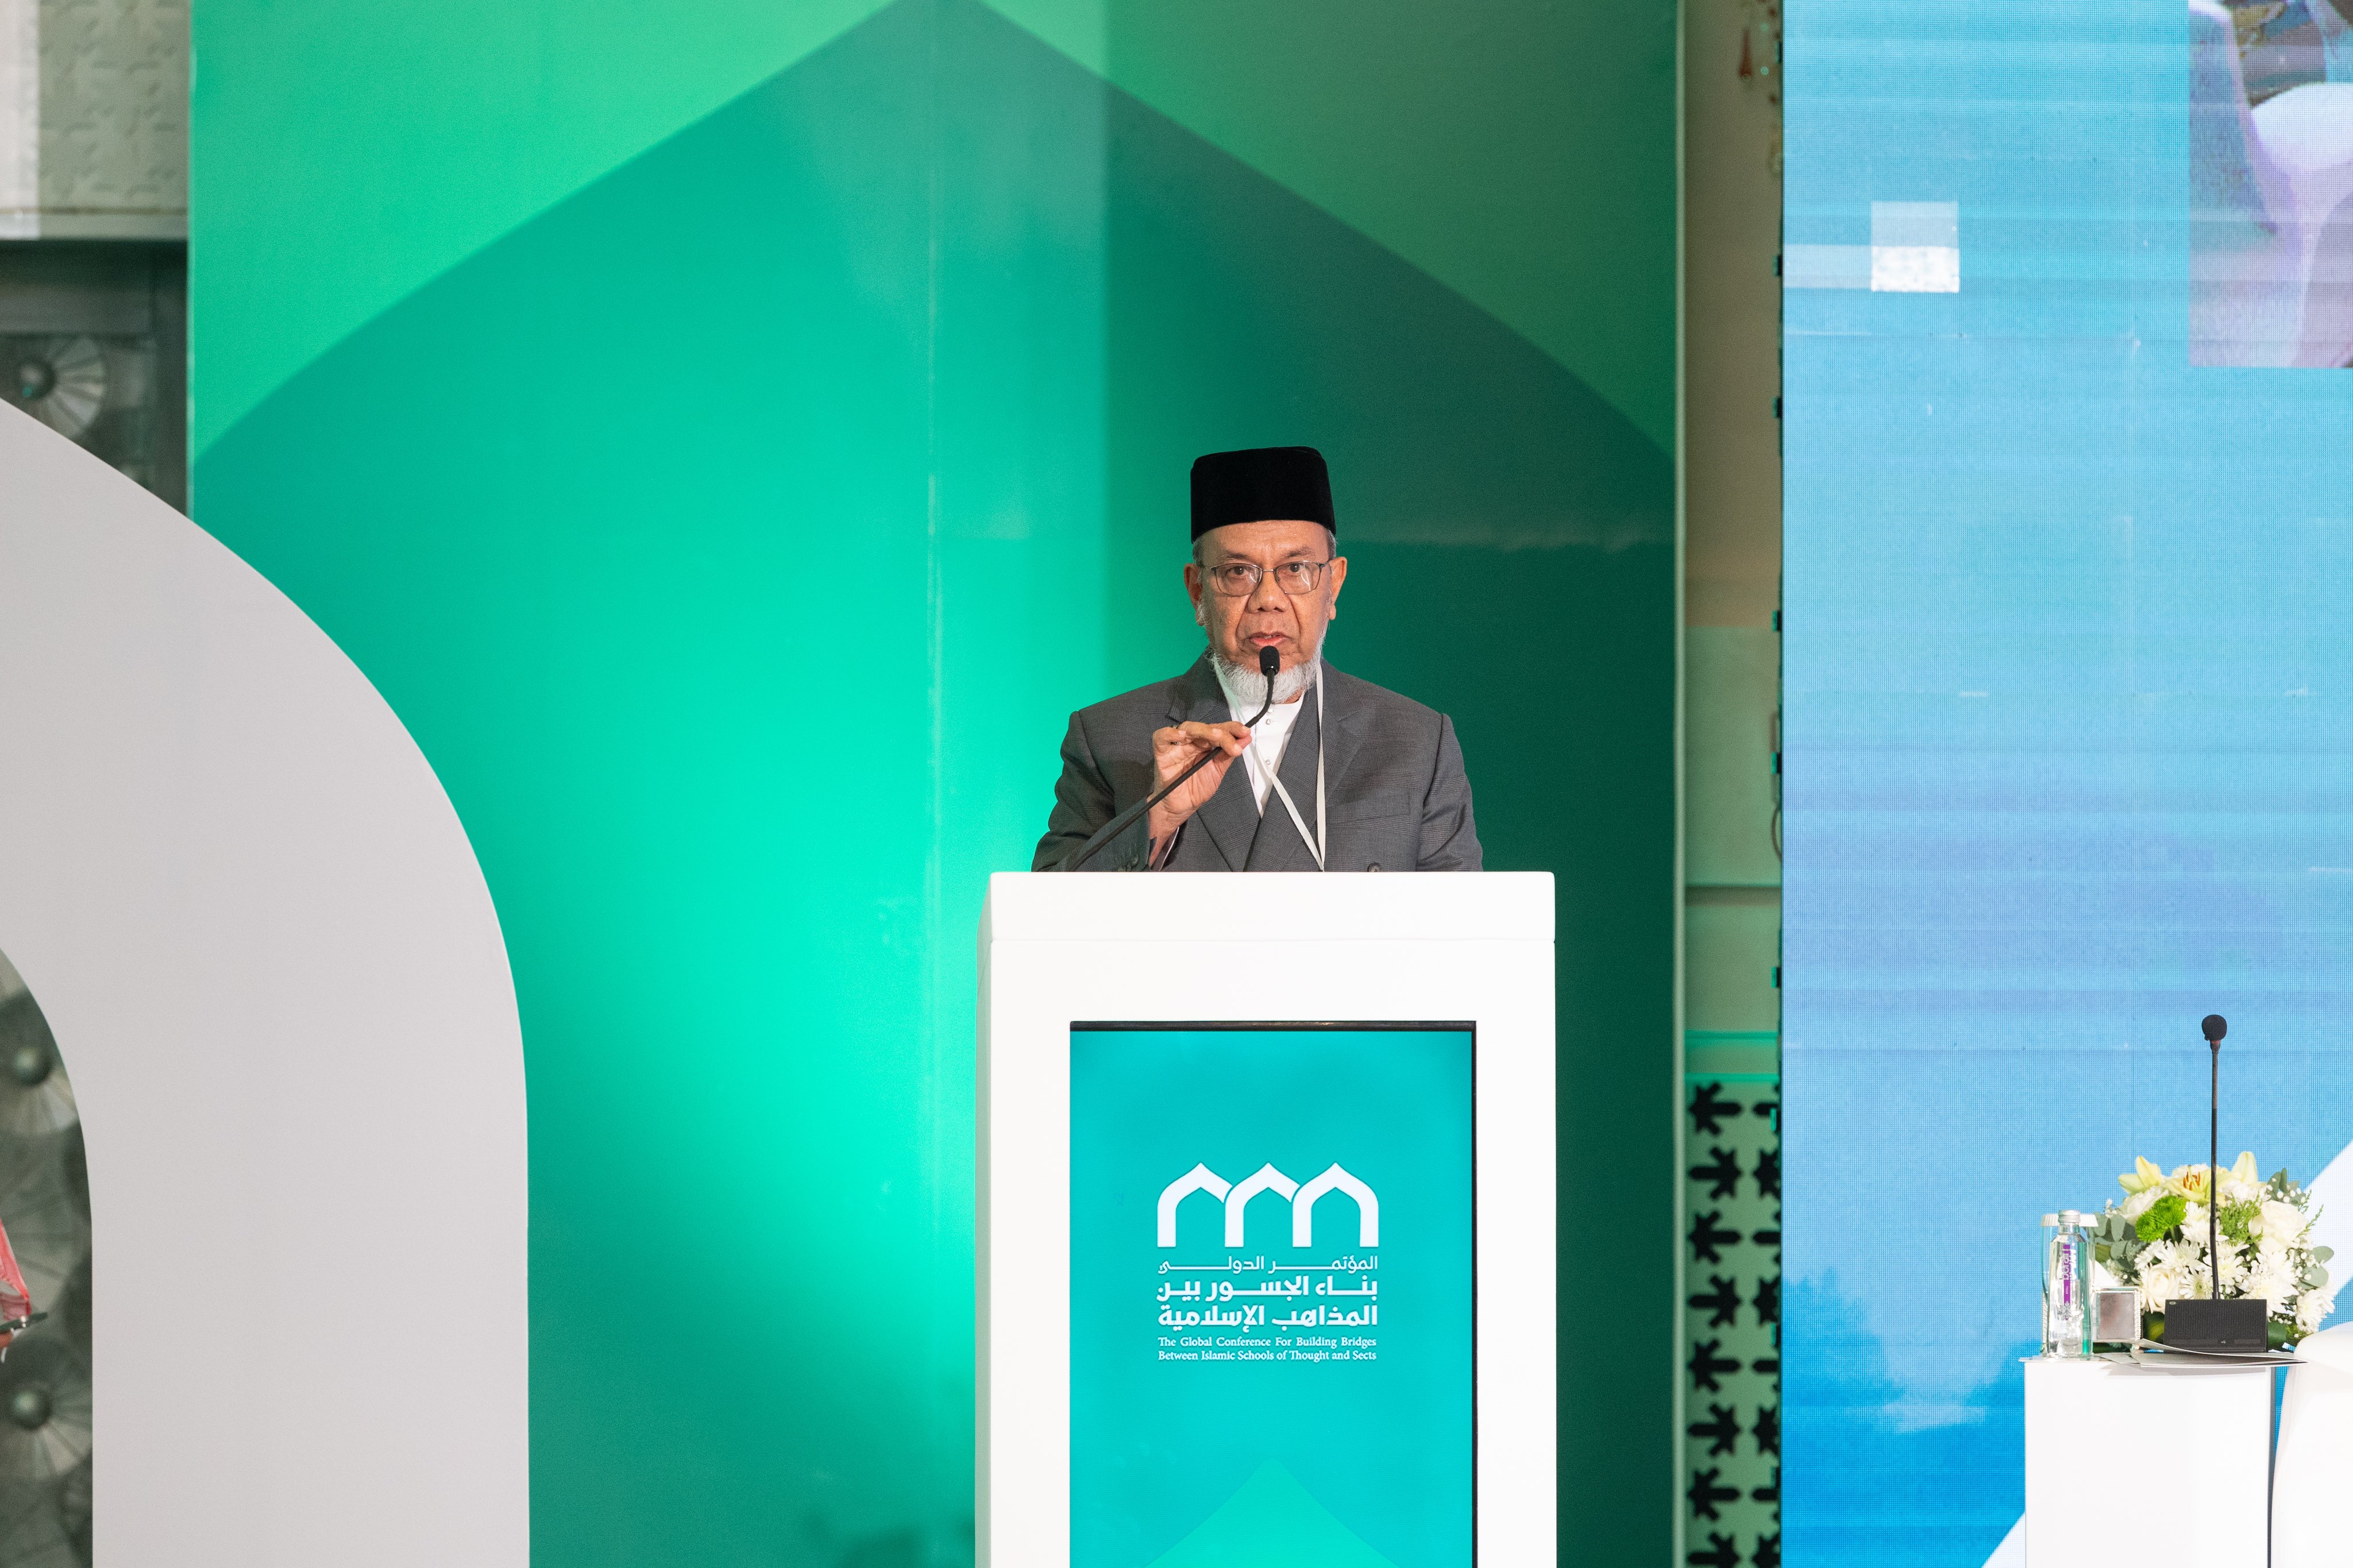 Yang Mulia Ketua Asosiasi Ulama Malaysia, Syekh Wan Mohammed bin Abdulaziz, dalam pidatonya pada sesi pembukaan konferensi: “Membangun Jembatan Antar Mazhab Islam”: